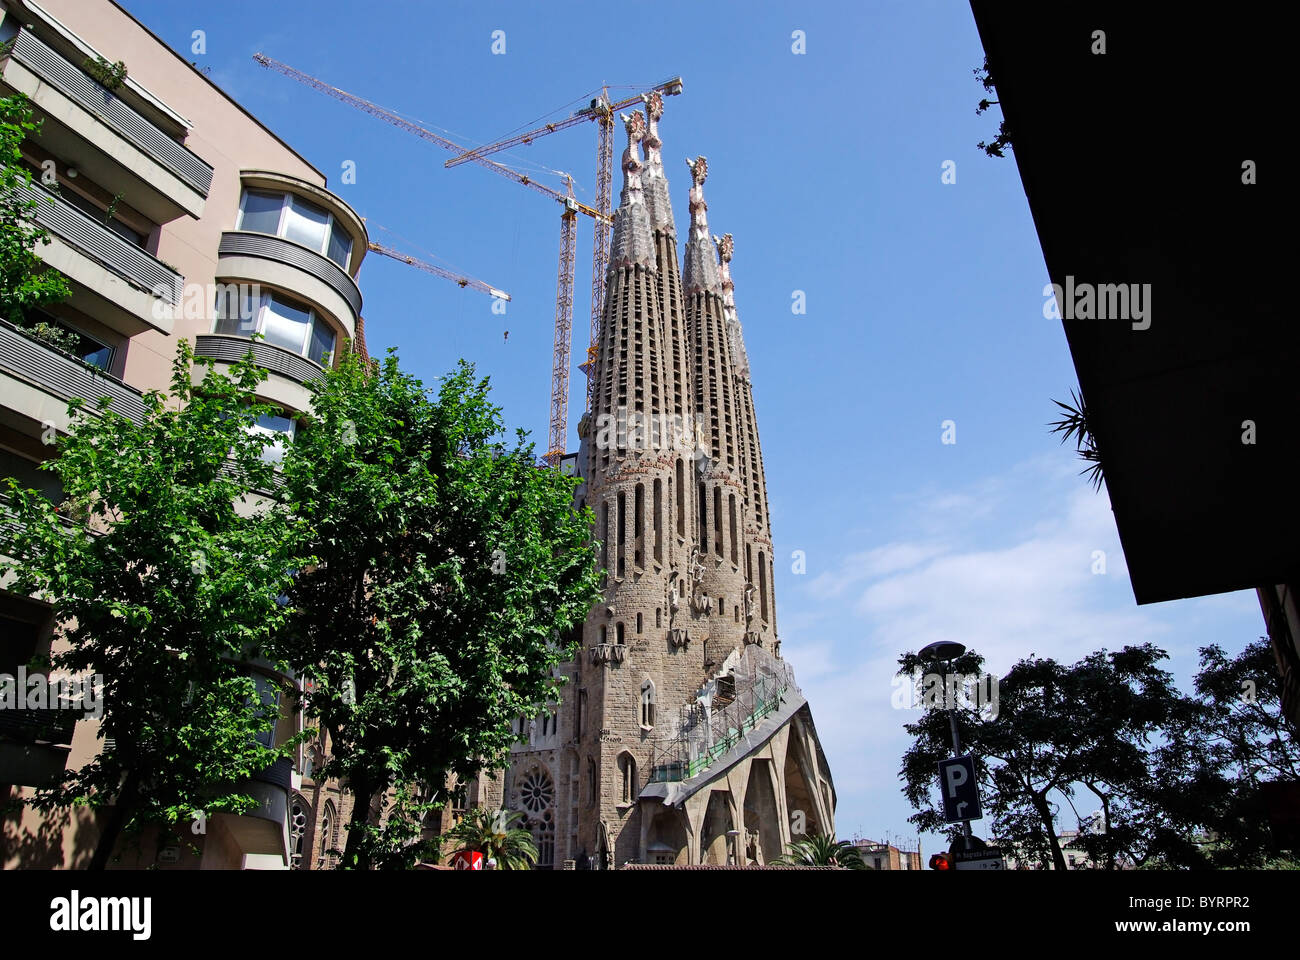 Église de la Sagrada Familia avec appartements à proximité. Barcelone, Espagne. 2009 Banque D'Images